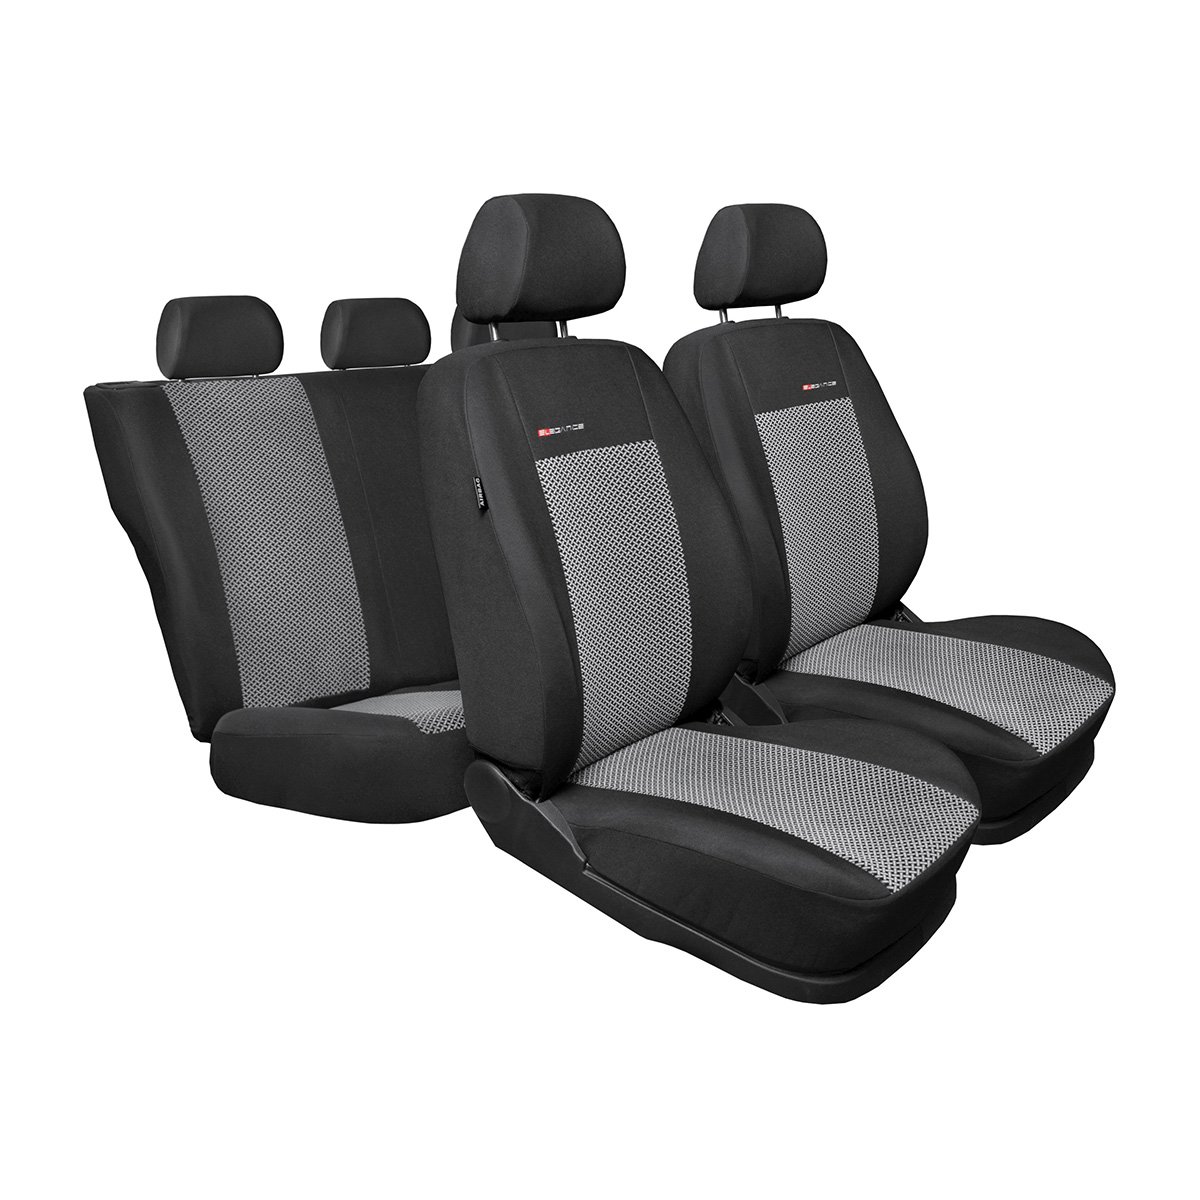 Mossa - Maßgeschneiderte Sitzbezüge Auto kompatibel mit Audi A4 B8 Avant, Limousine (2008-2015) - Autositzbezüge Schonbezüge für Autositze - E2 von Mossa